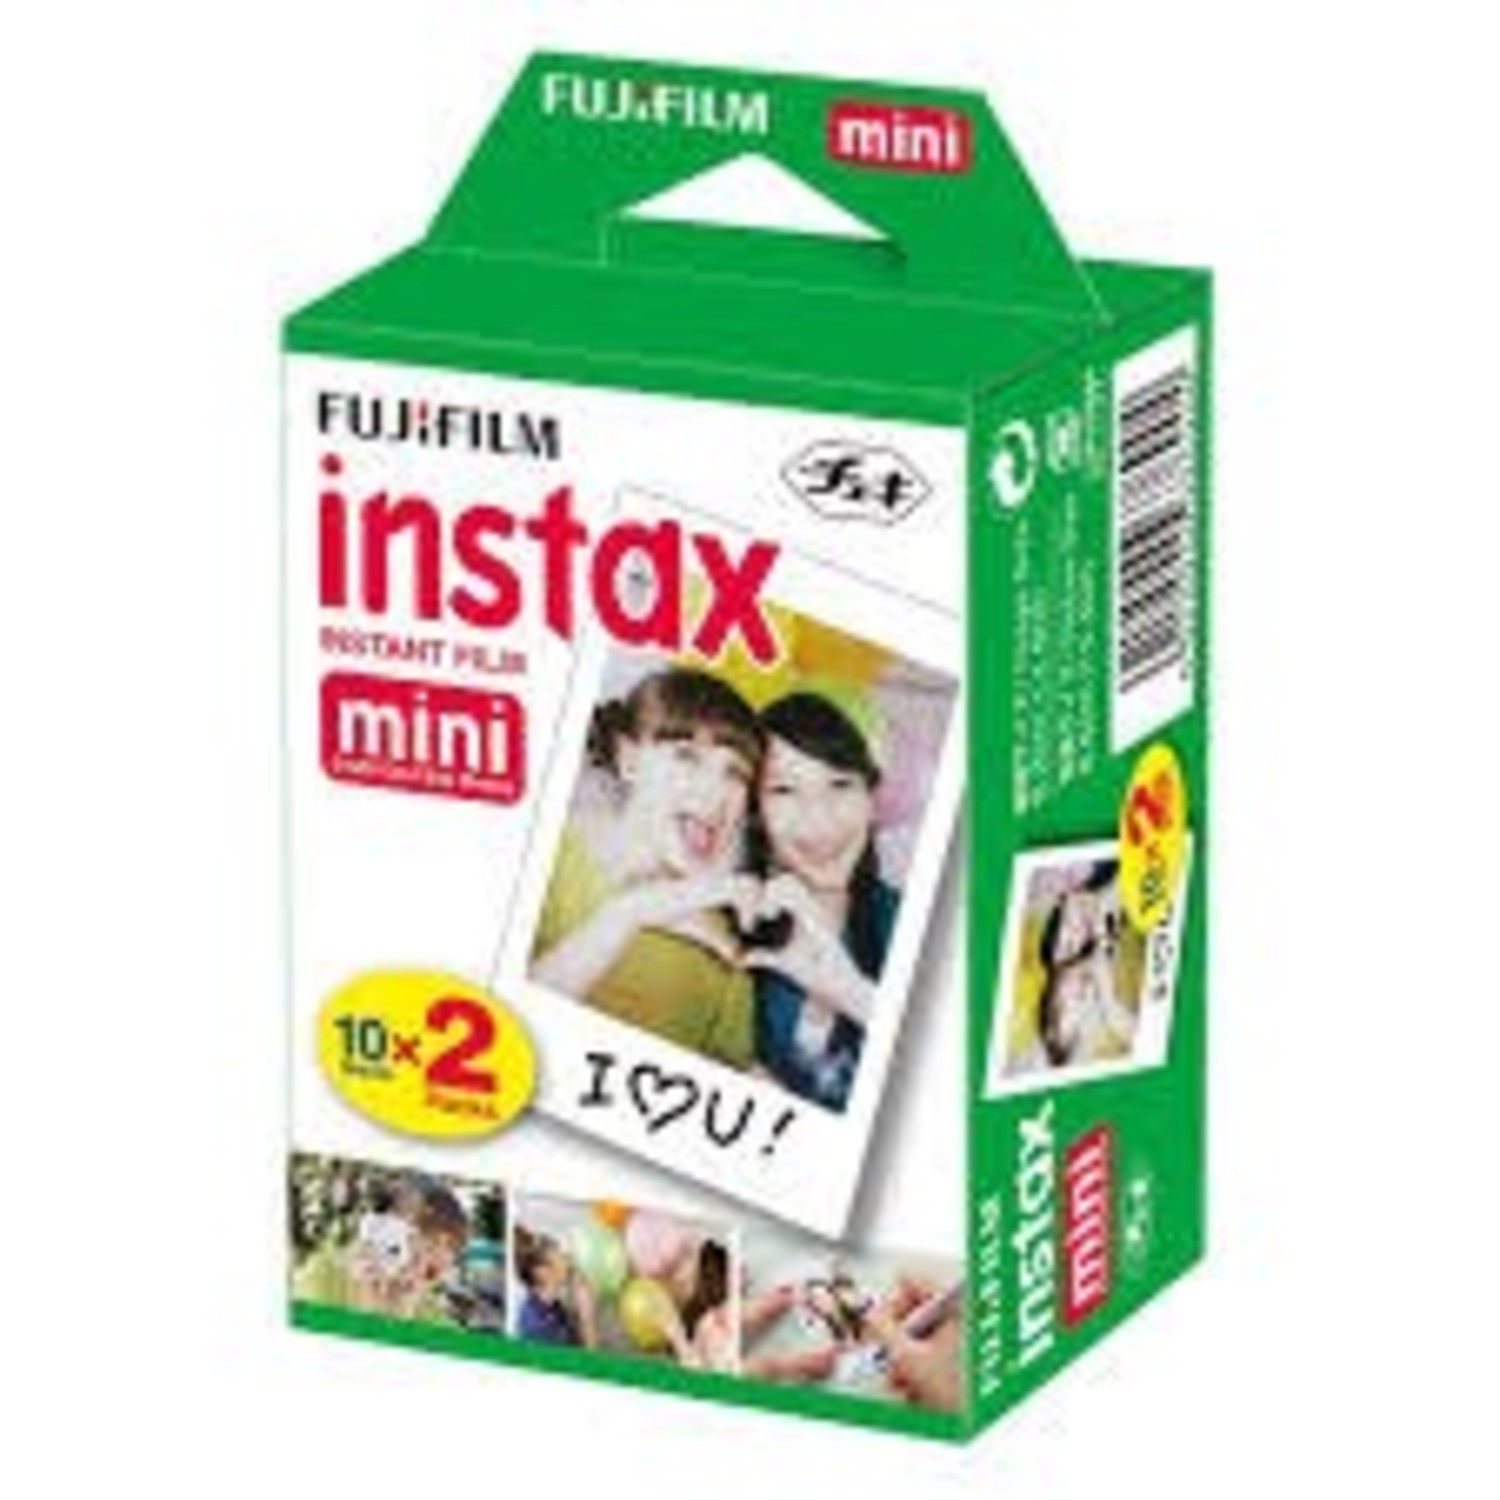 Grado Celsius Sin lugar a dudas Mal Fujifilm Instax Mini Film,Fuji--INSTAX MINI Twin Pack Instant Film -  kite+key, Rutgers Tech Store